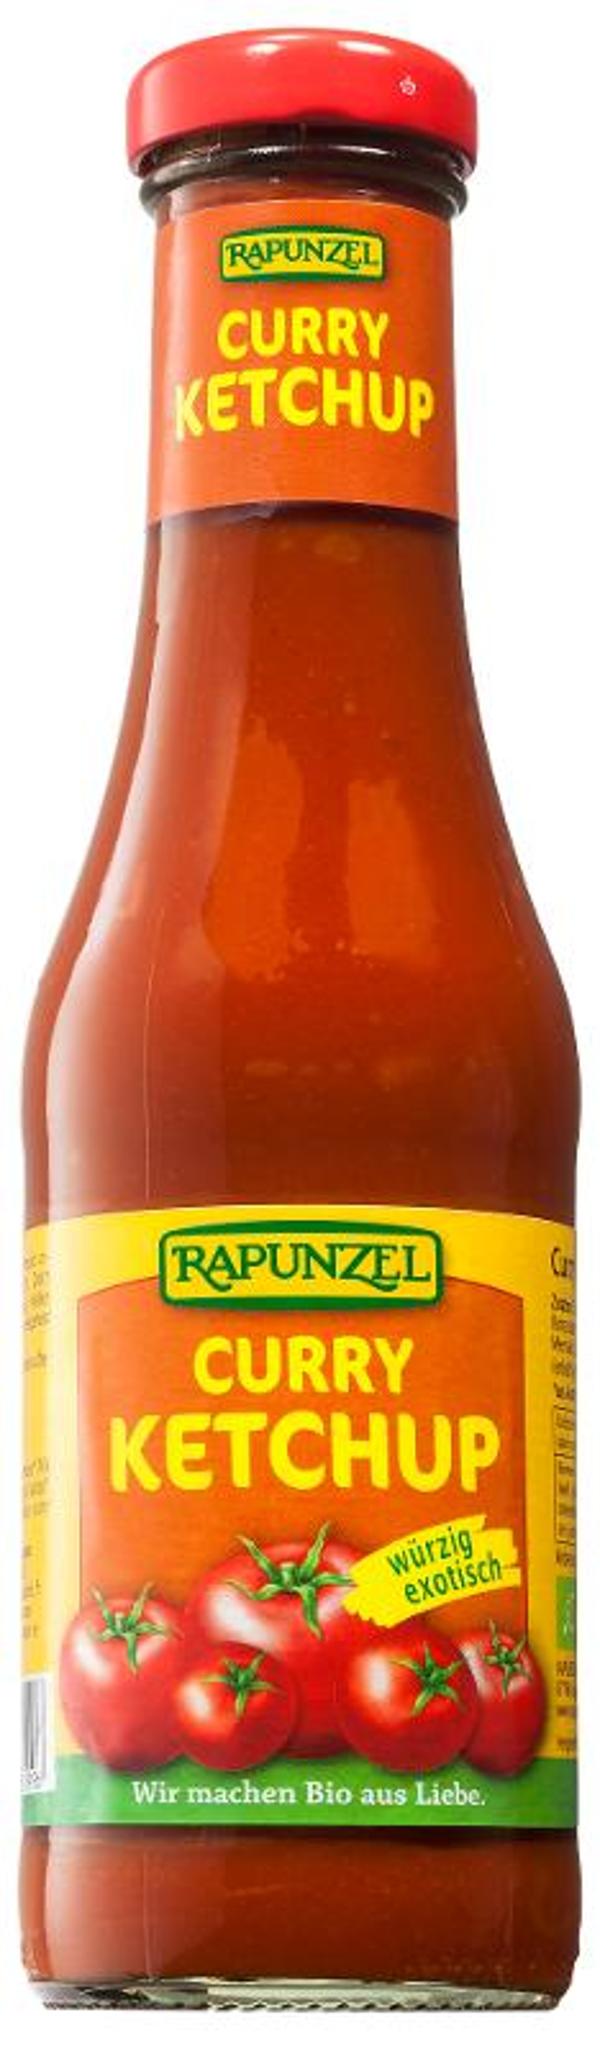 Produktfoto zu Rapunzel Ketchup Curry - 450ml